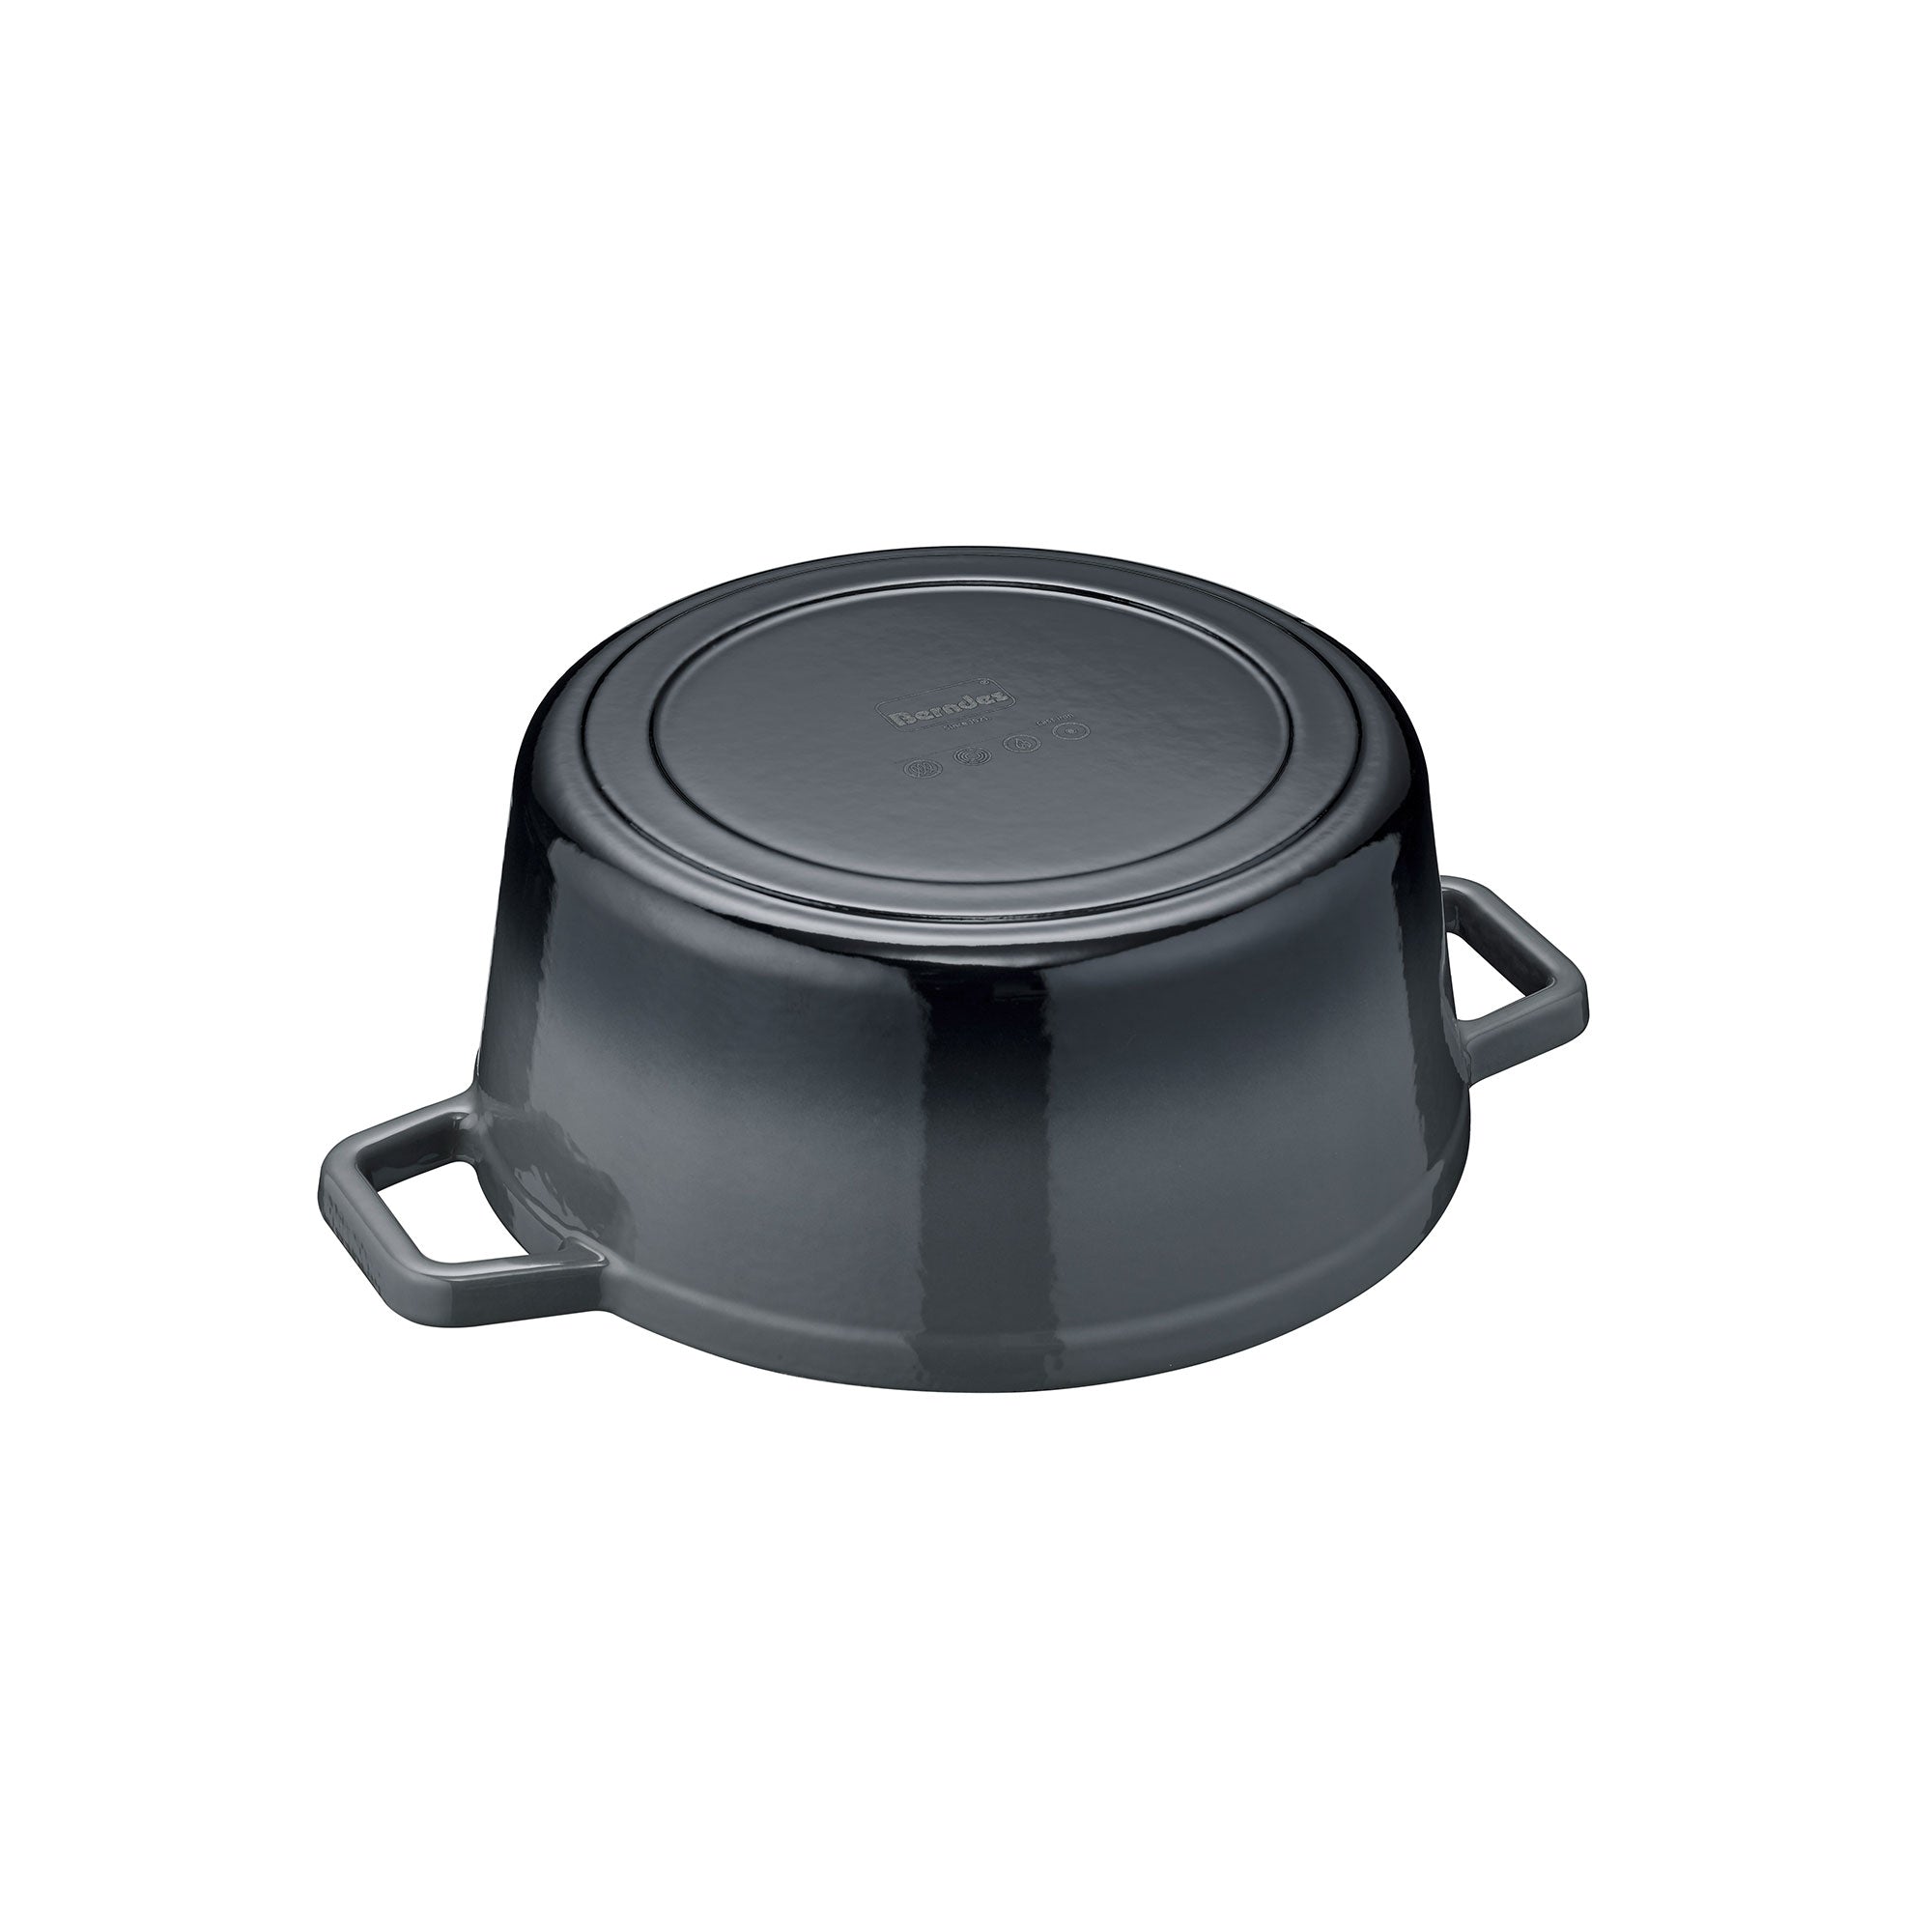 Bräter/Kochtopf 20, 24 oder 26 cm, rund, Gusseisen, schwarz/grau - b.iron  von BERNDES – BERNDES Küche GmbH